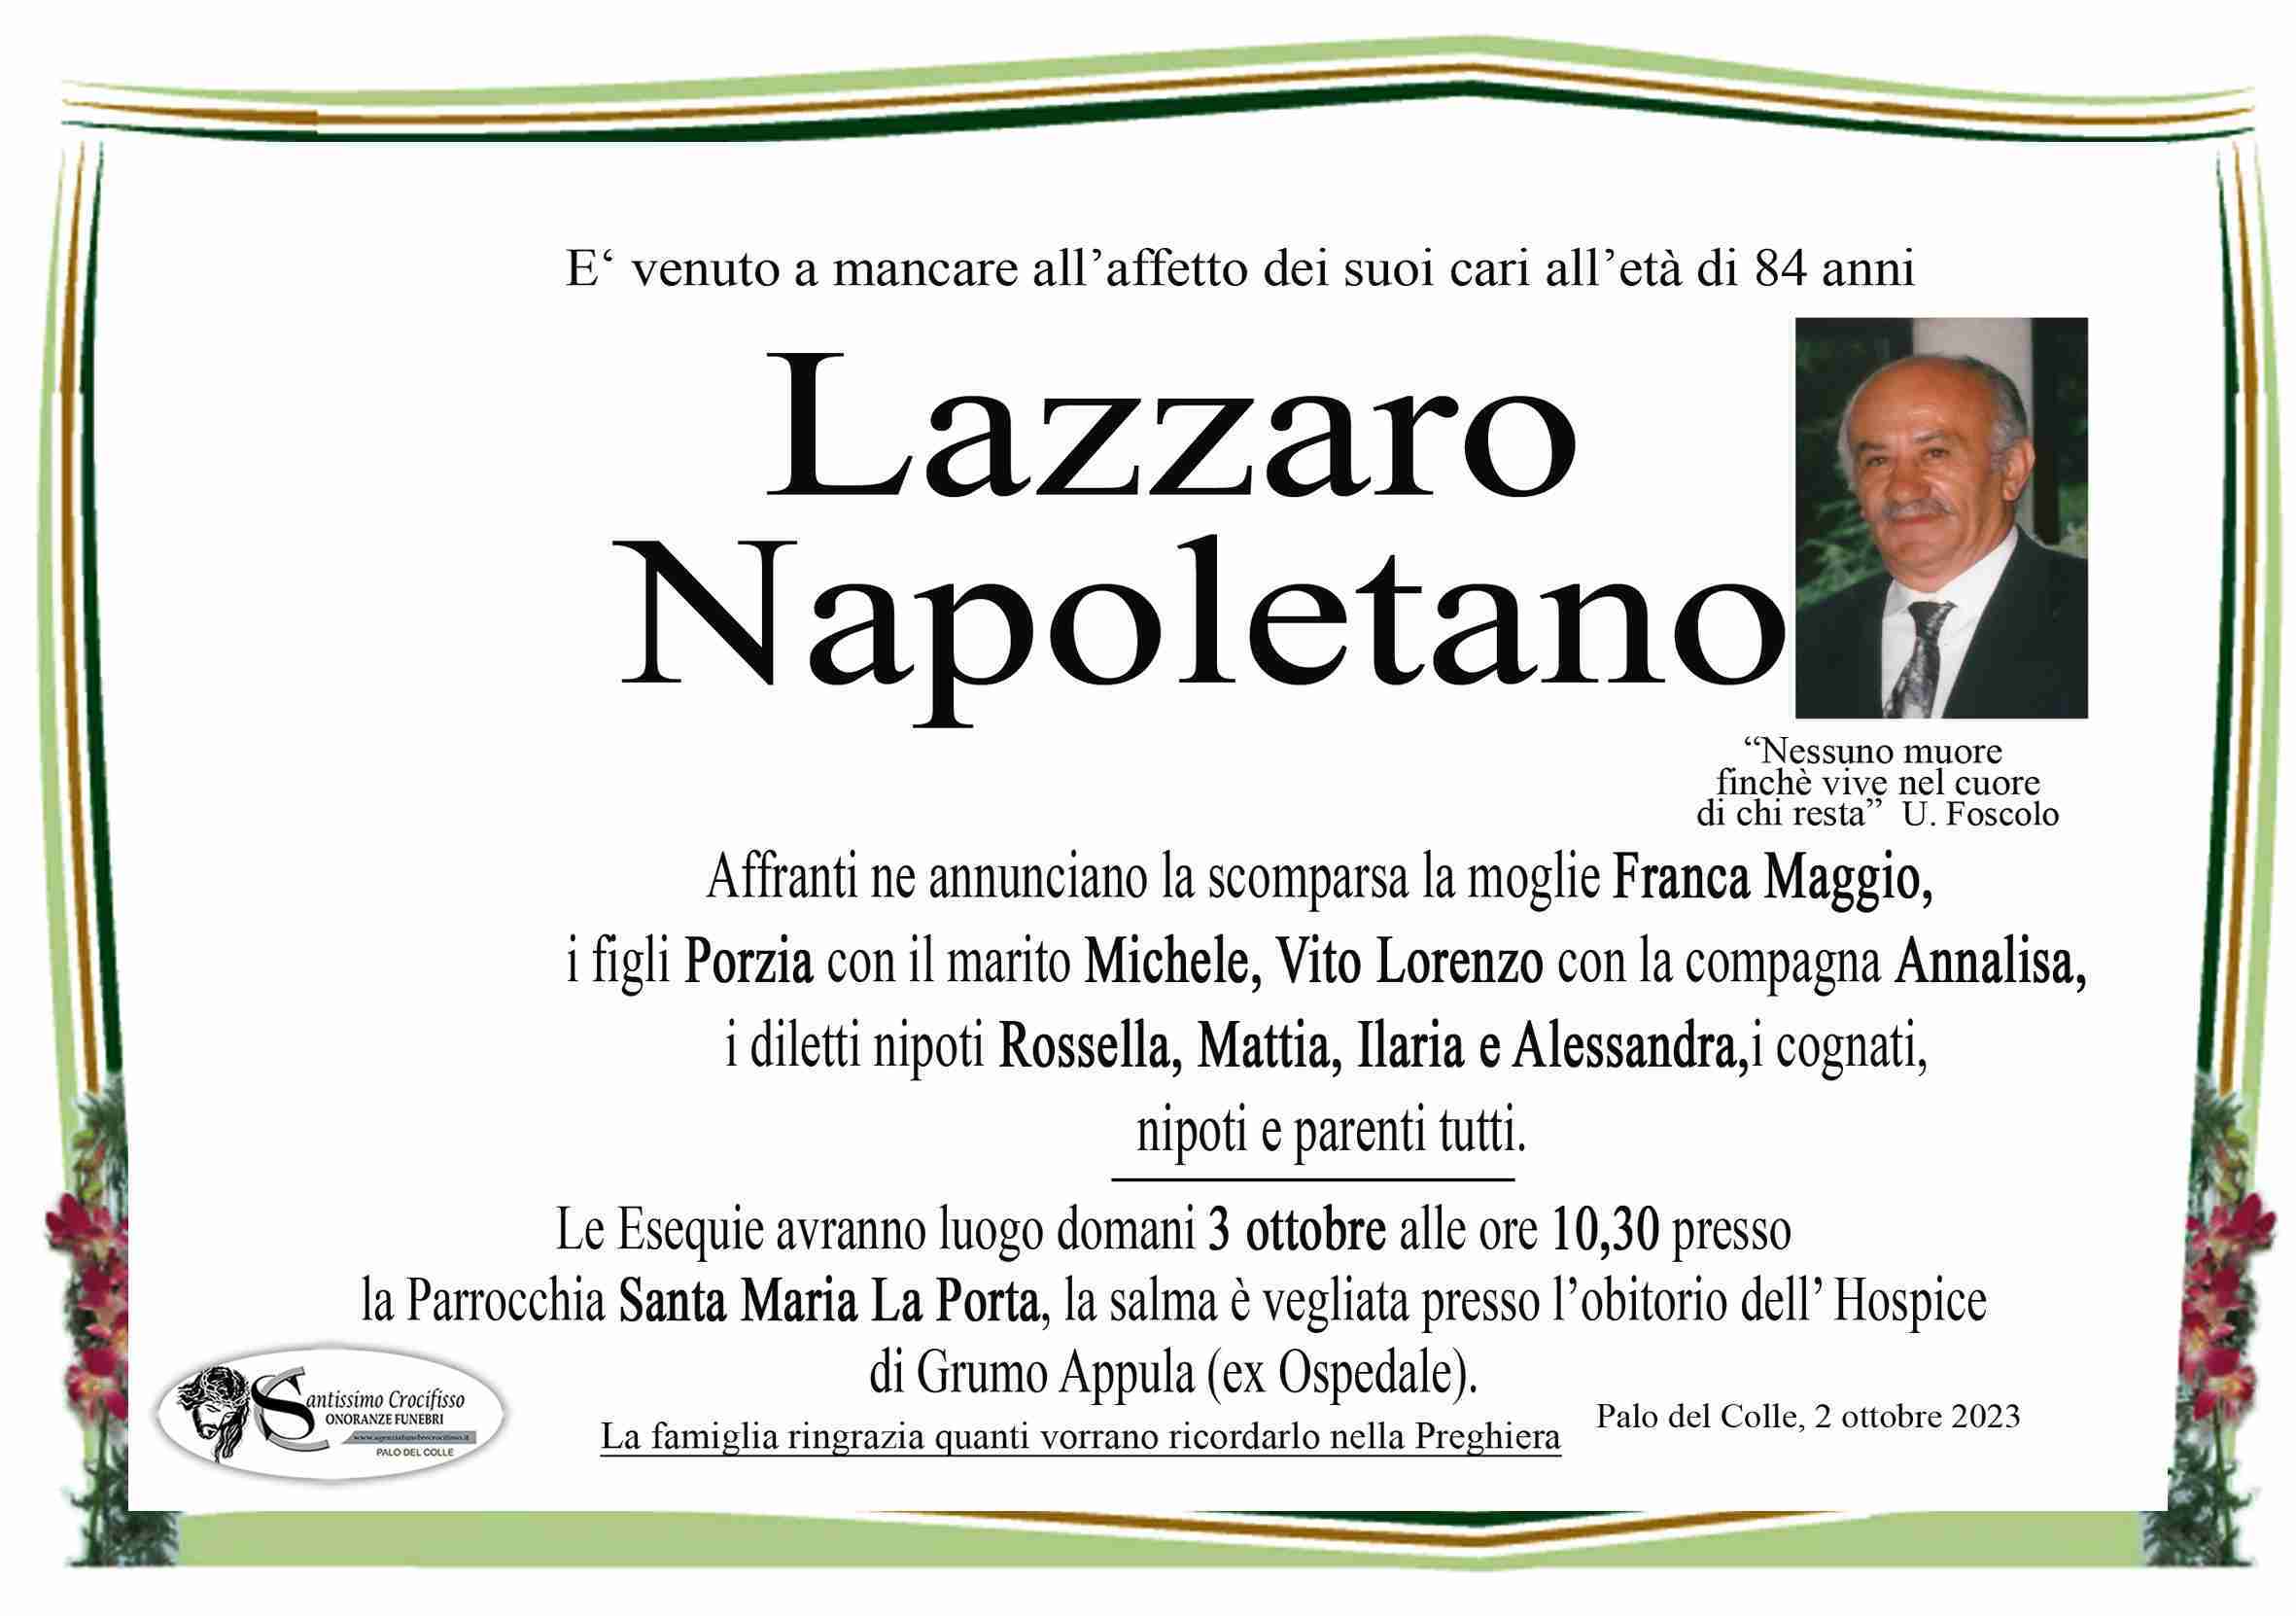 Lazzaro Napoletano